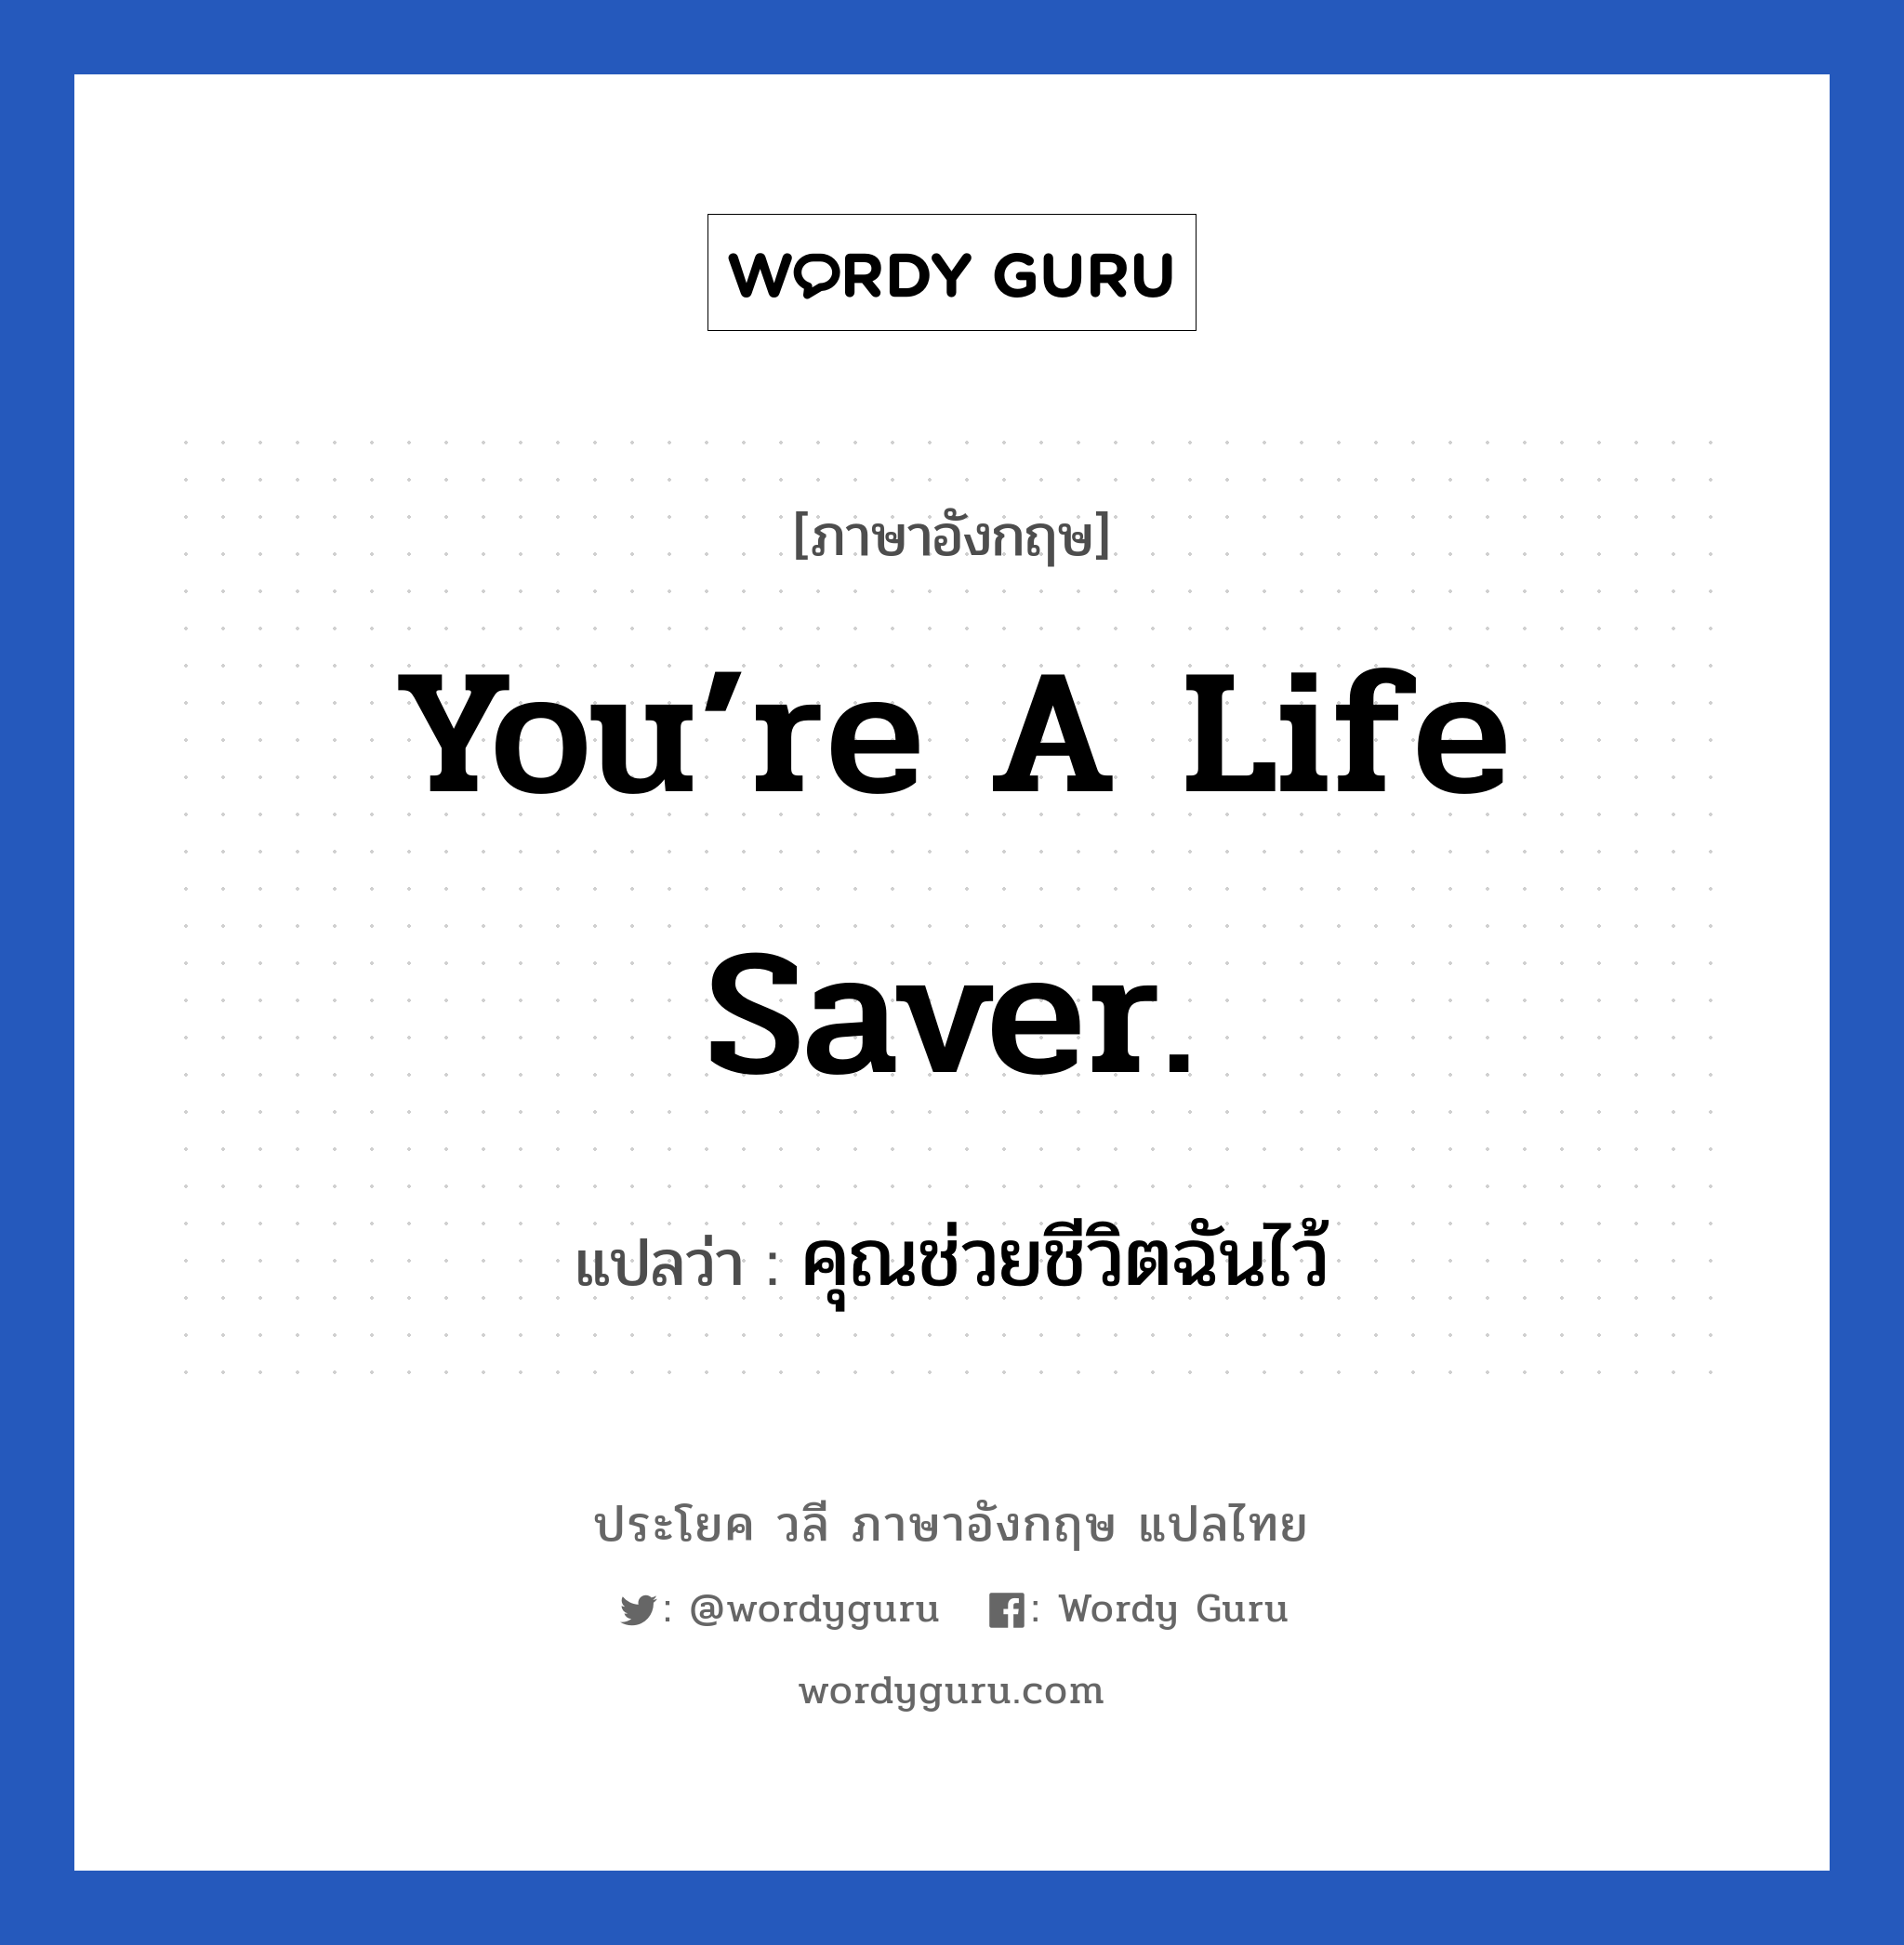 คุณช่วยชีวิตฉันไว้ ภาษาอังกฤษ?, วลีภาษาอังกฤษ คุณช่วยชีวิตฉันไว้ แปลว่า You’re a life saver.